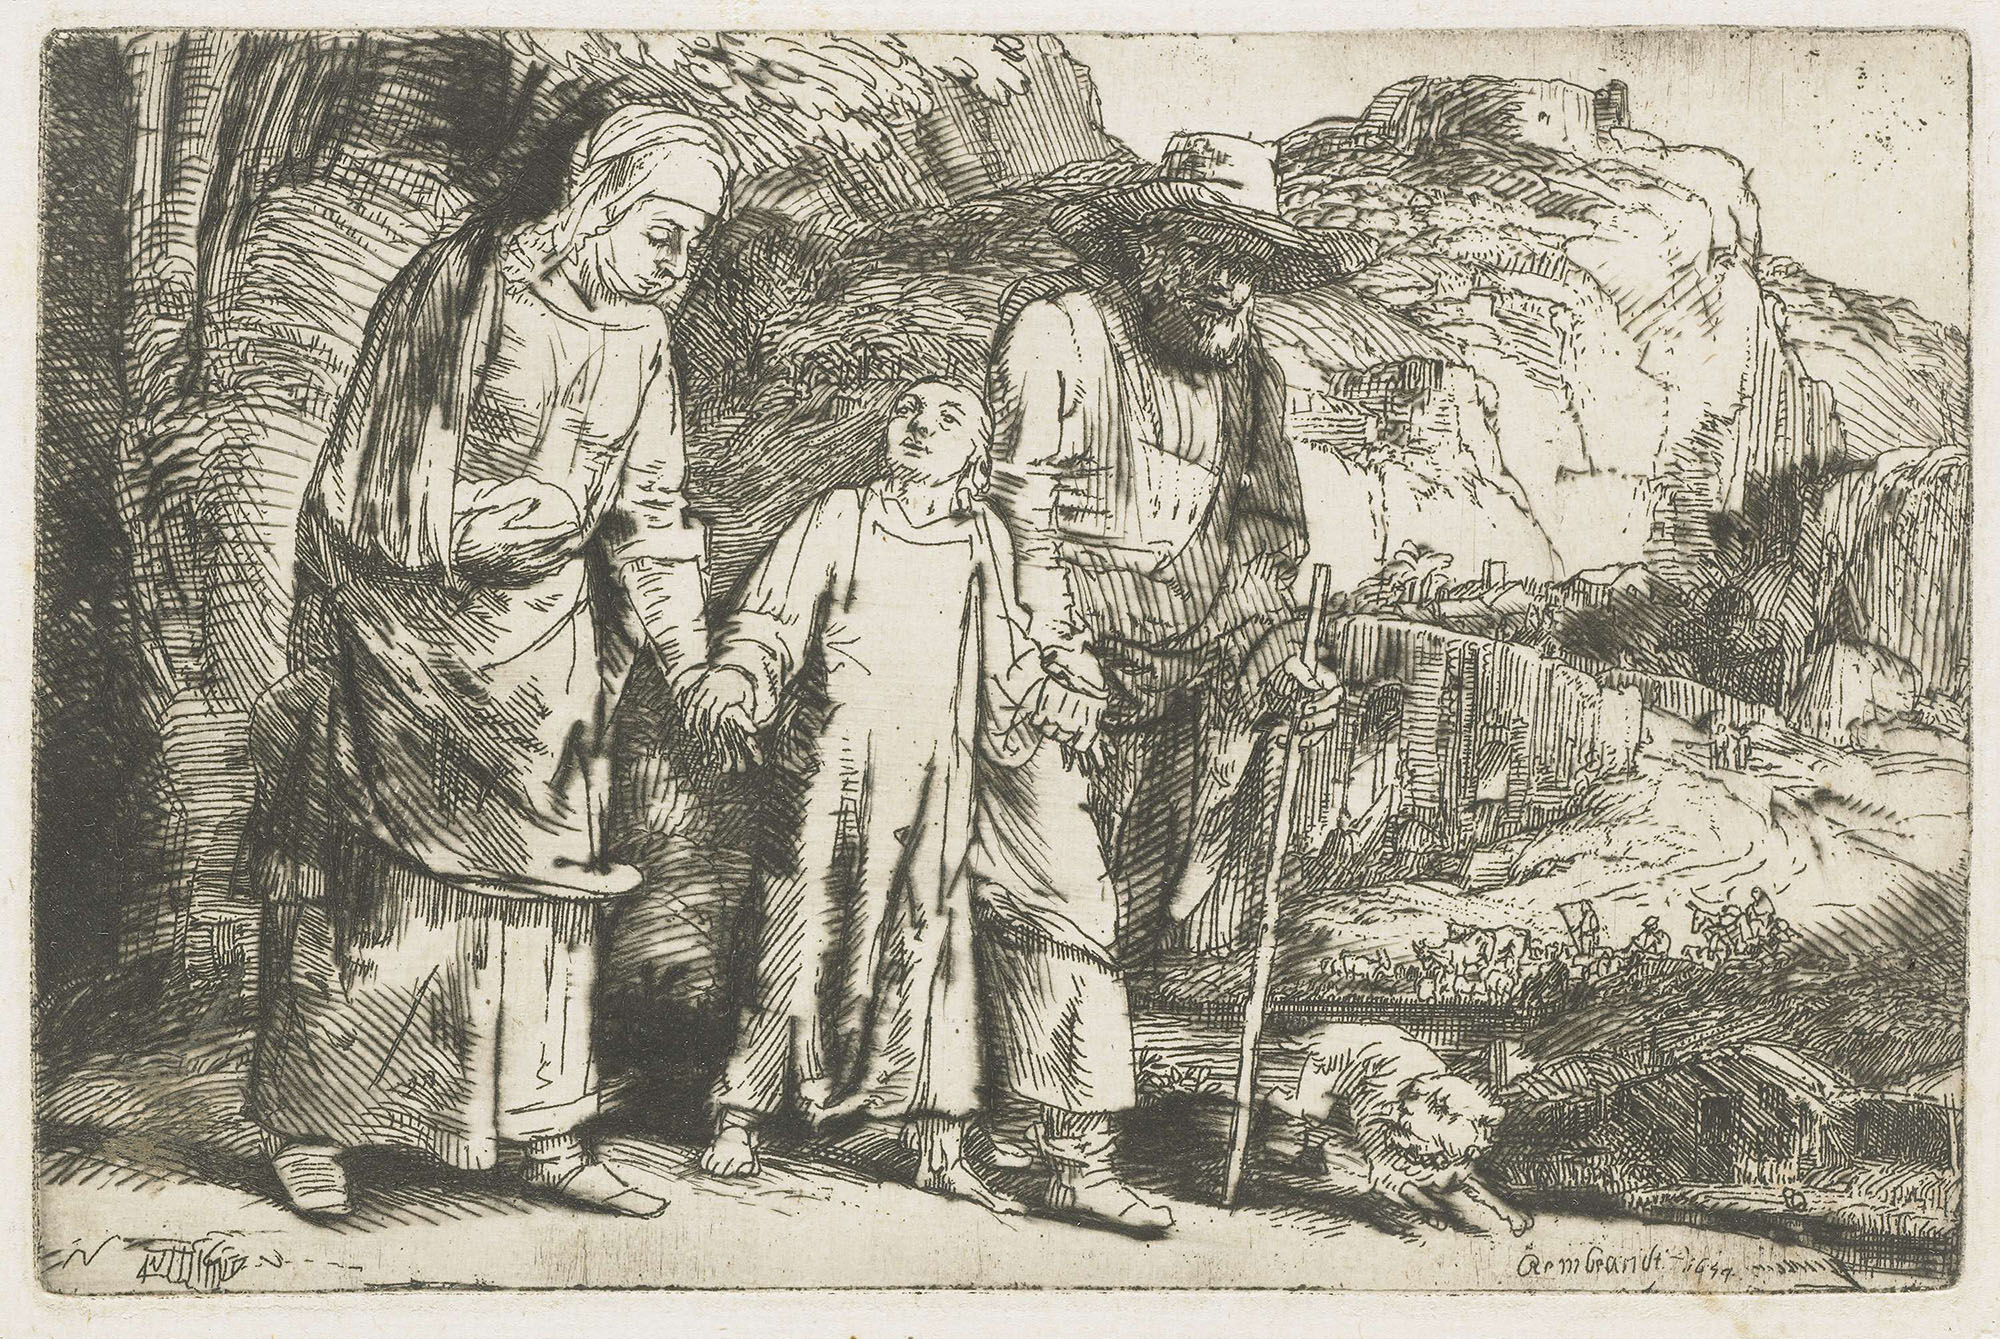 Рембрандт Харменс ван Рейн. "Отрок Христос возвращается с Иосифом и Девой Марией из иерусалимского храма". 1654.